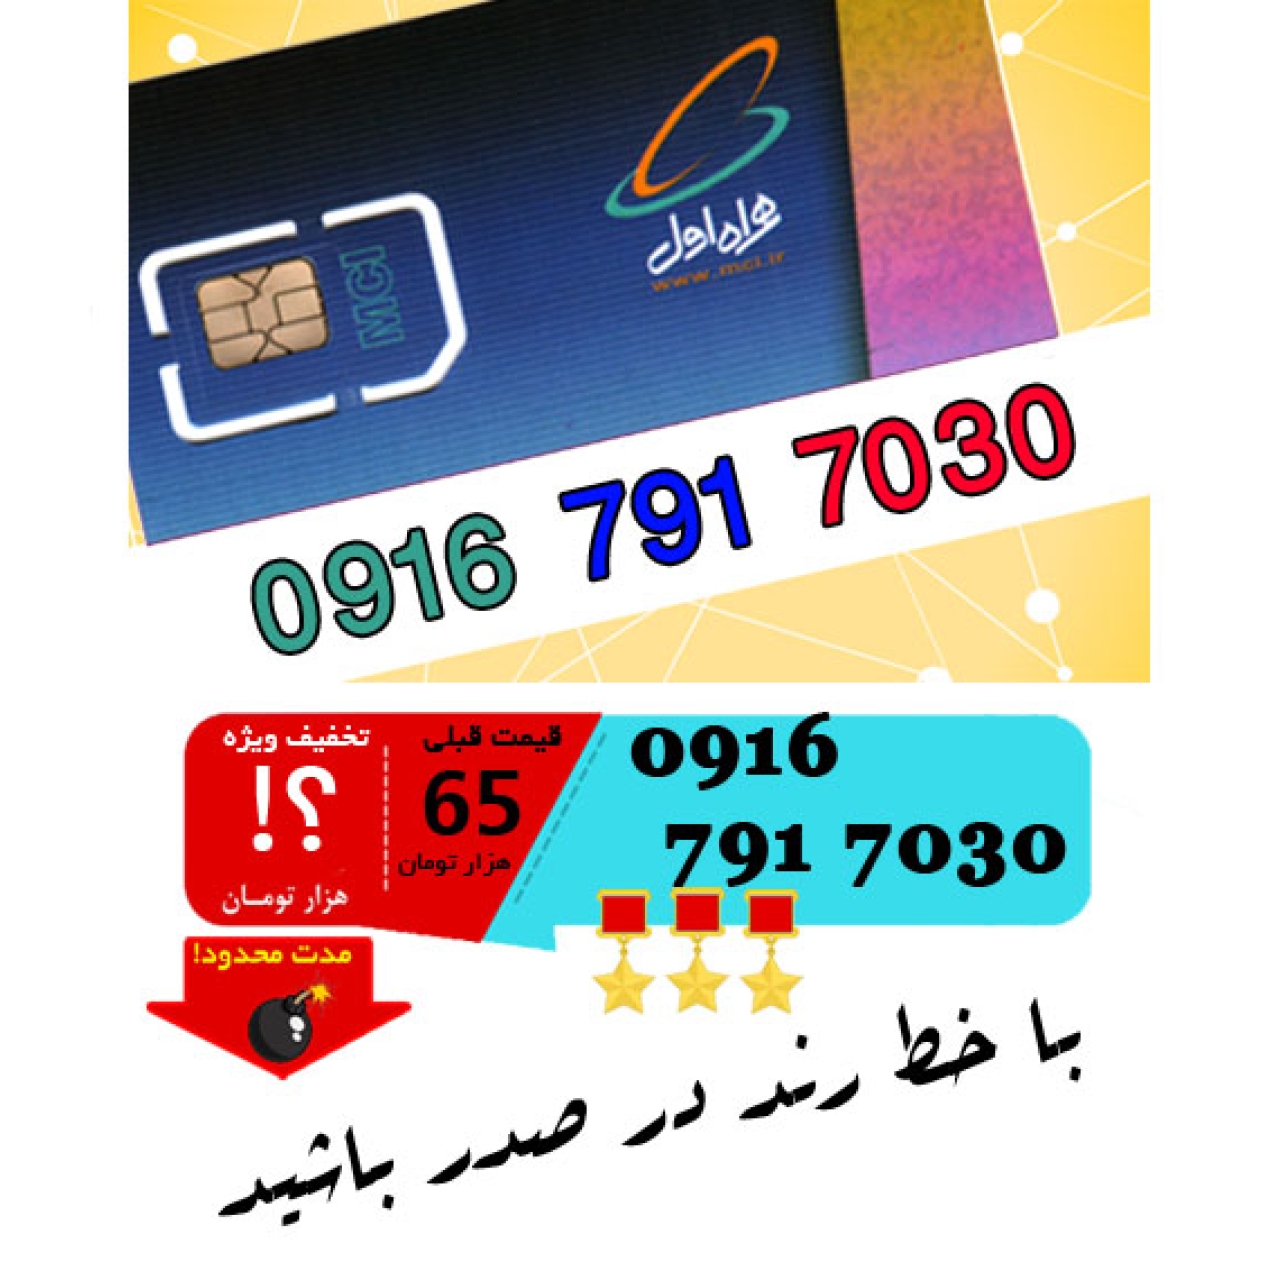 سیم کارت اعتباری رند همراه اول 09167917030